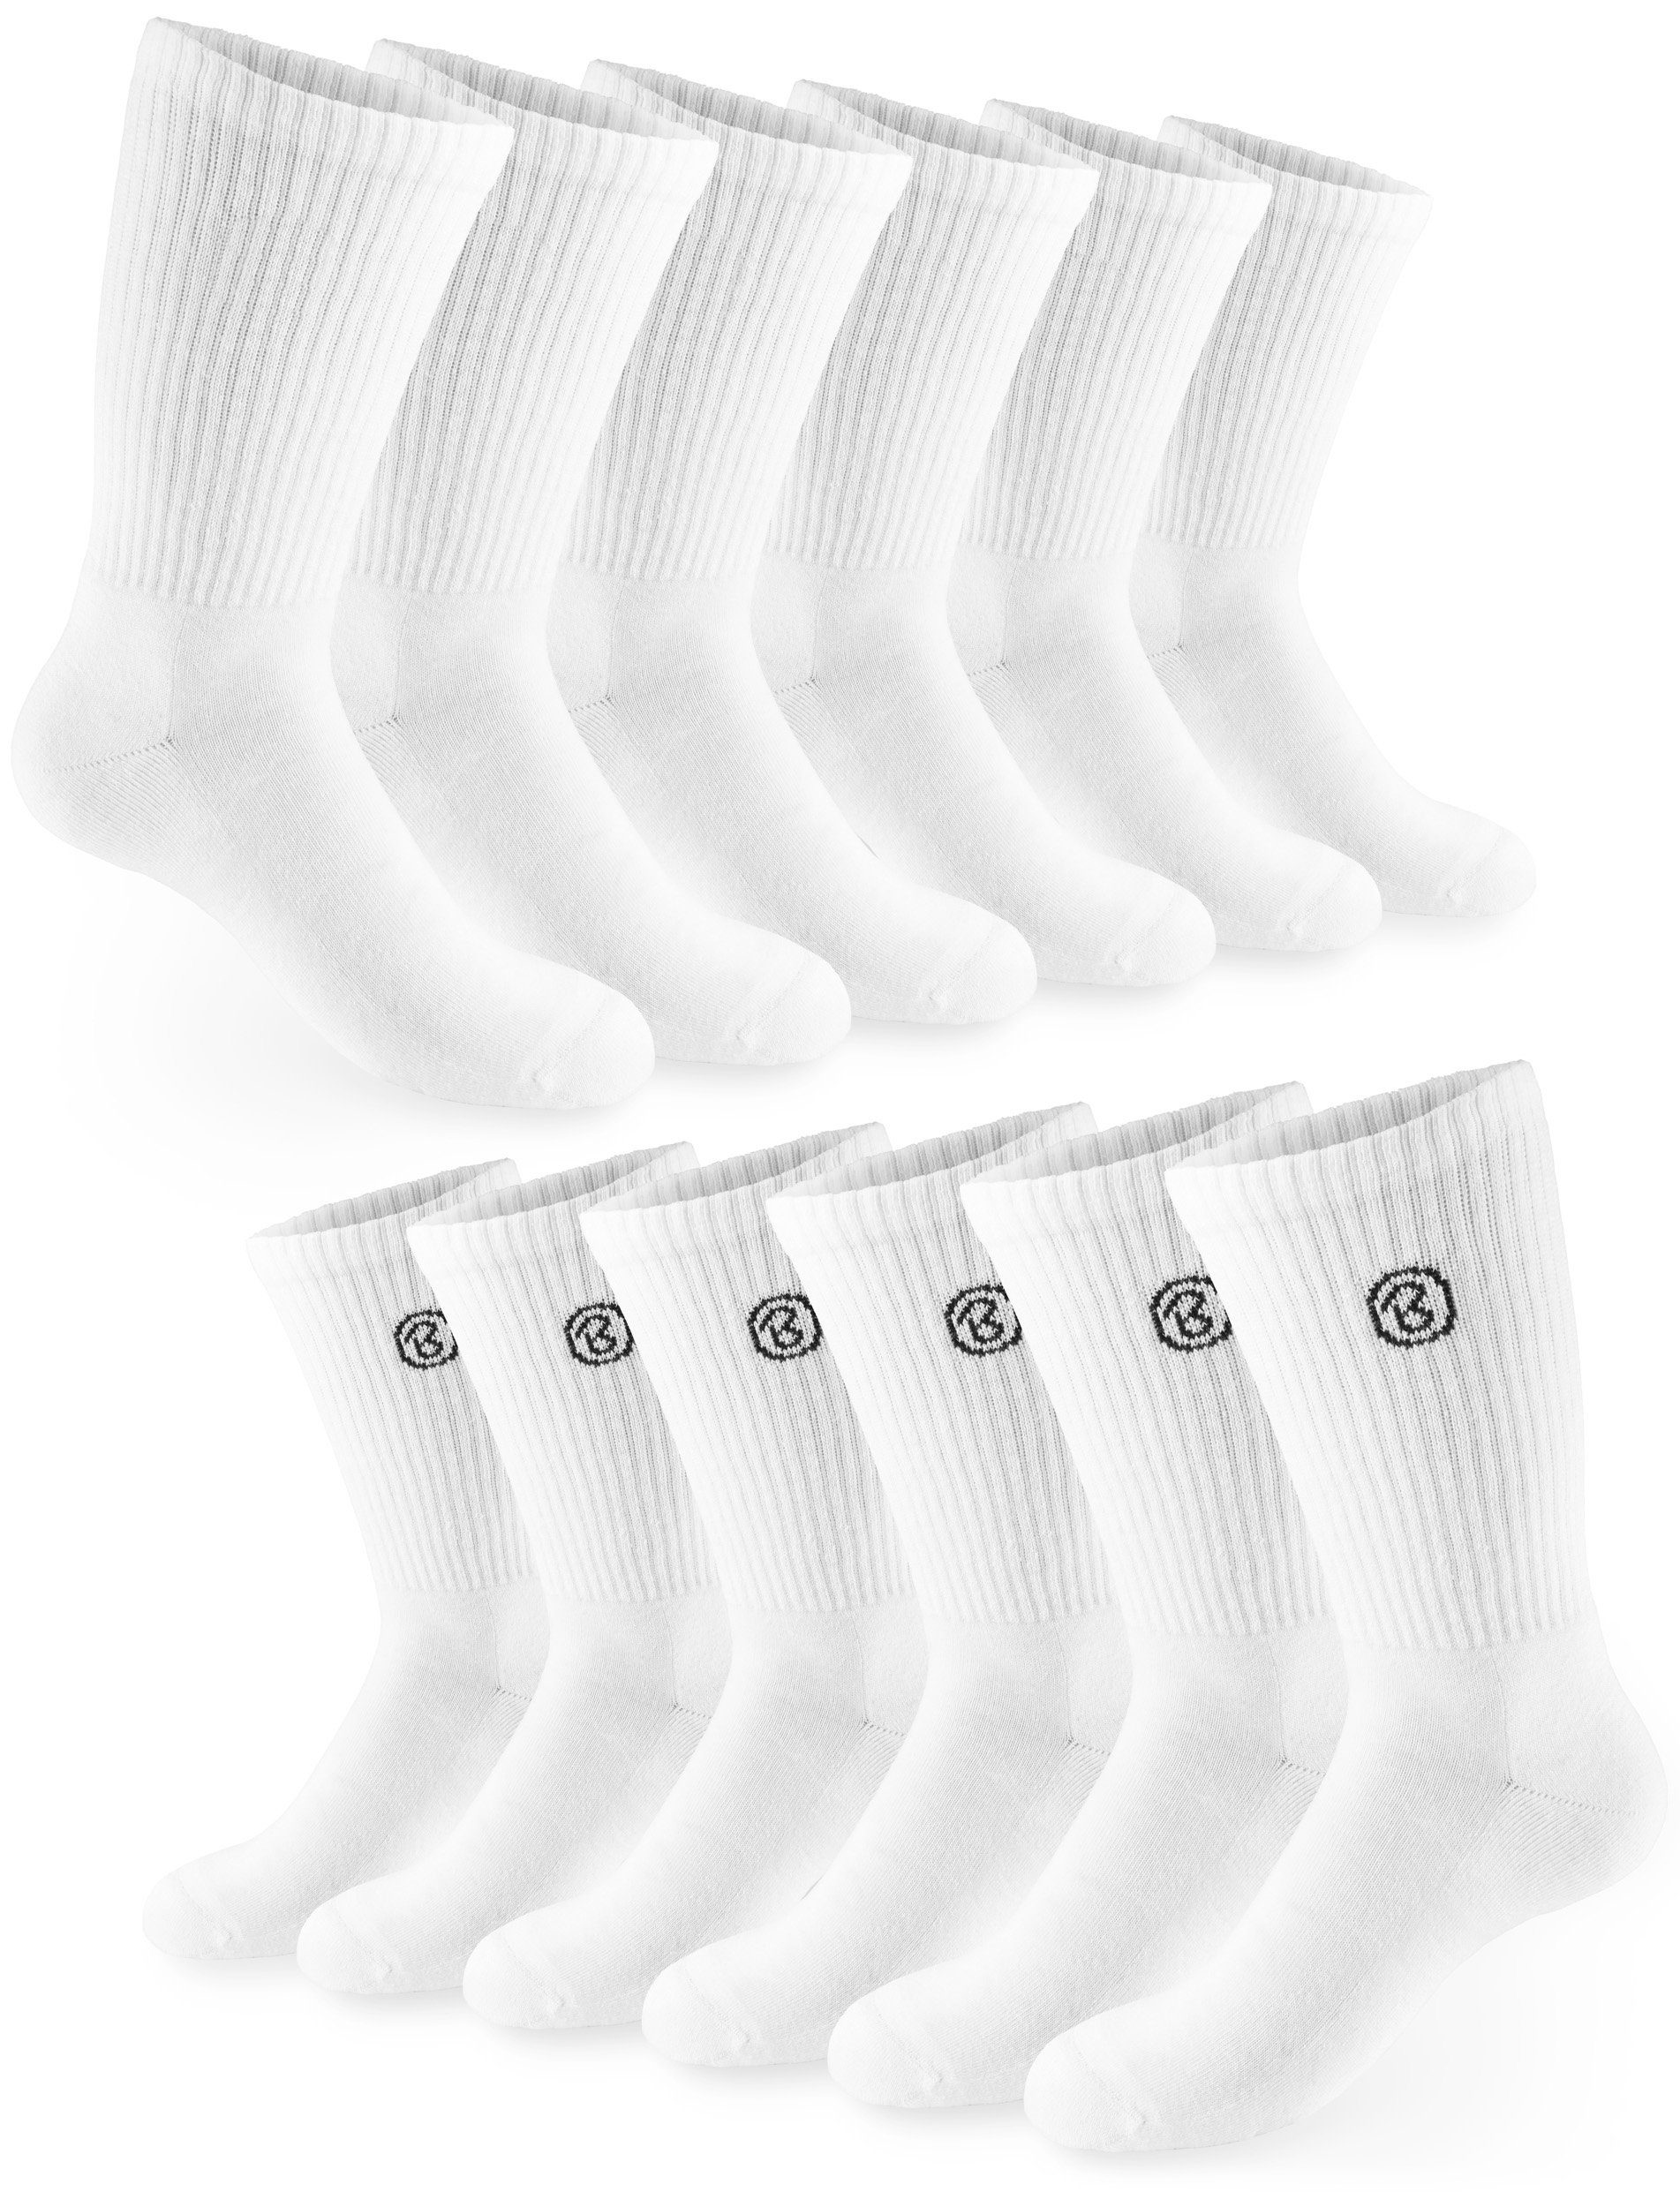 BRUBAKER Tennissocken Unisex Sportsocken und 6 Socks - Polyester Baumwollsocken Damen Herren Fitness und Socken (Set, aus Crew - Paar) Weiß für Baumwolle Lange